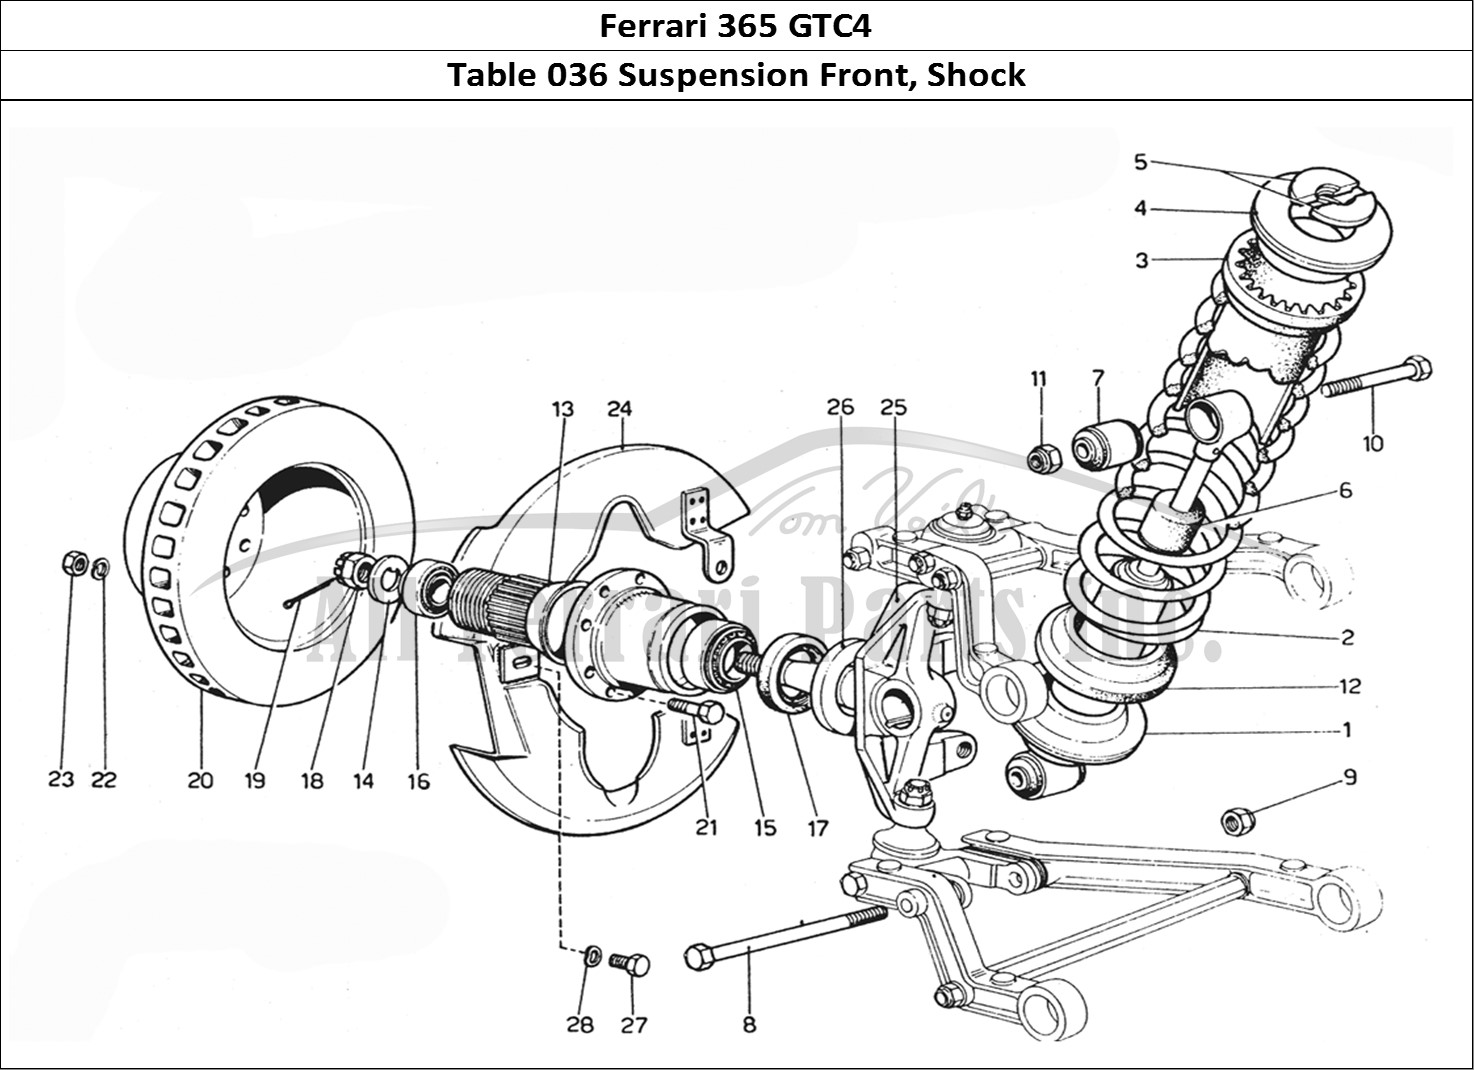 Ferrari Parts Ferrari 365 GTC4 (Mechanical) Page 036 Front suspension & Shock